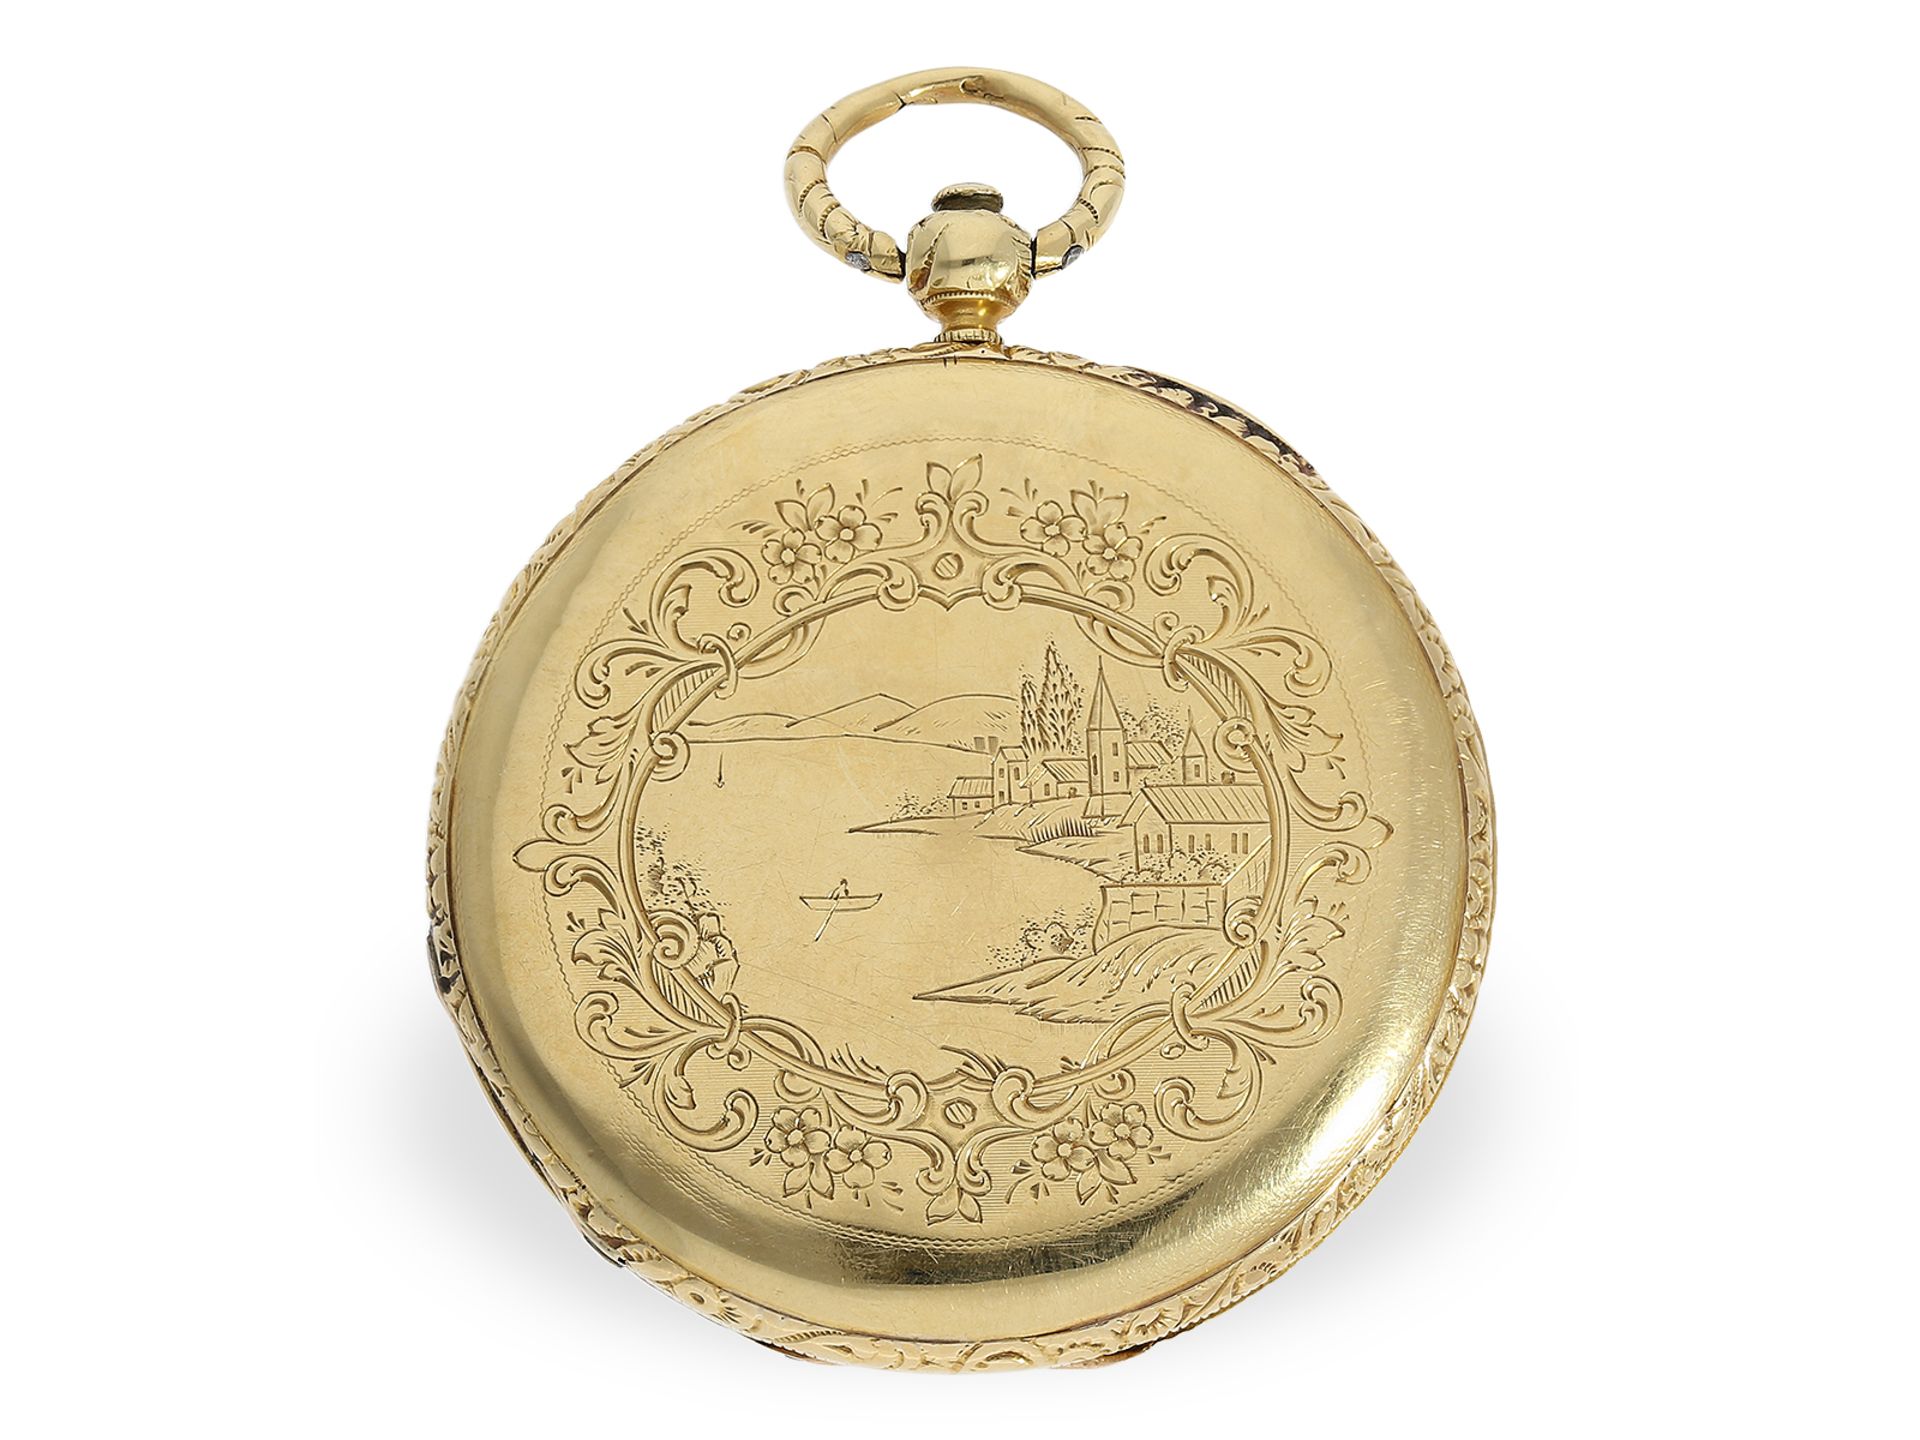 Flache 18K Taschenuhr, Goldsavonnette mit sehr schöner Gehäusegravur, Motta Geneve um 1840 - Bild 7 aus 7